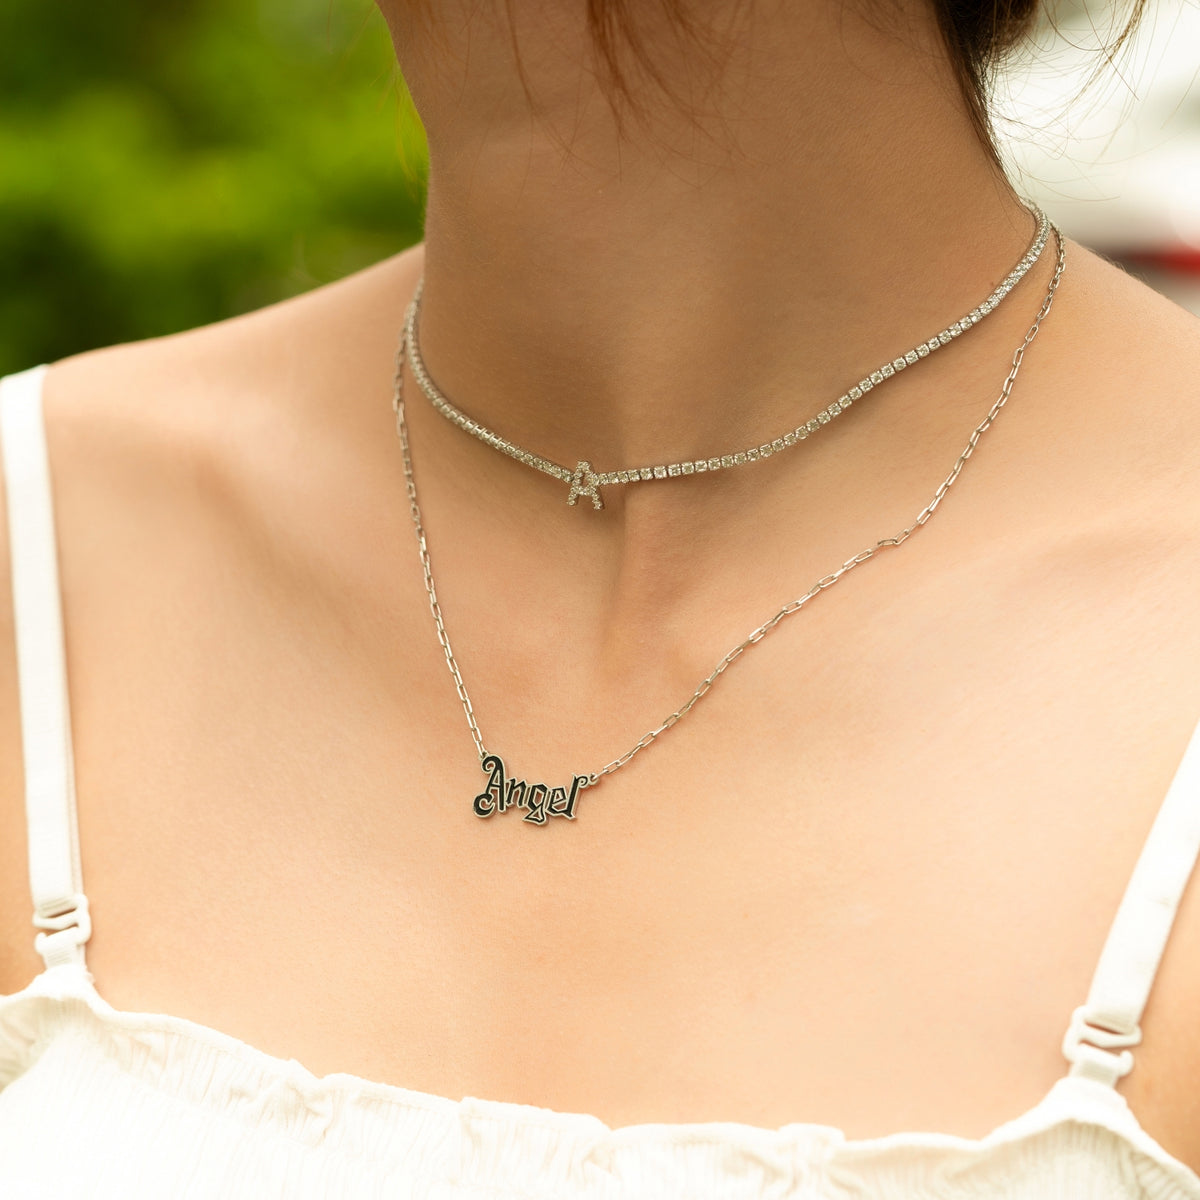 Personalized Name Gothic Style Enamel Pendant Necklace